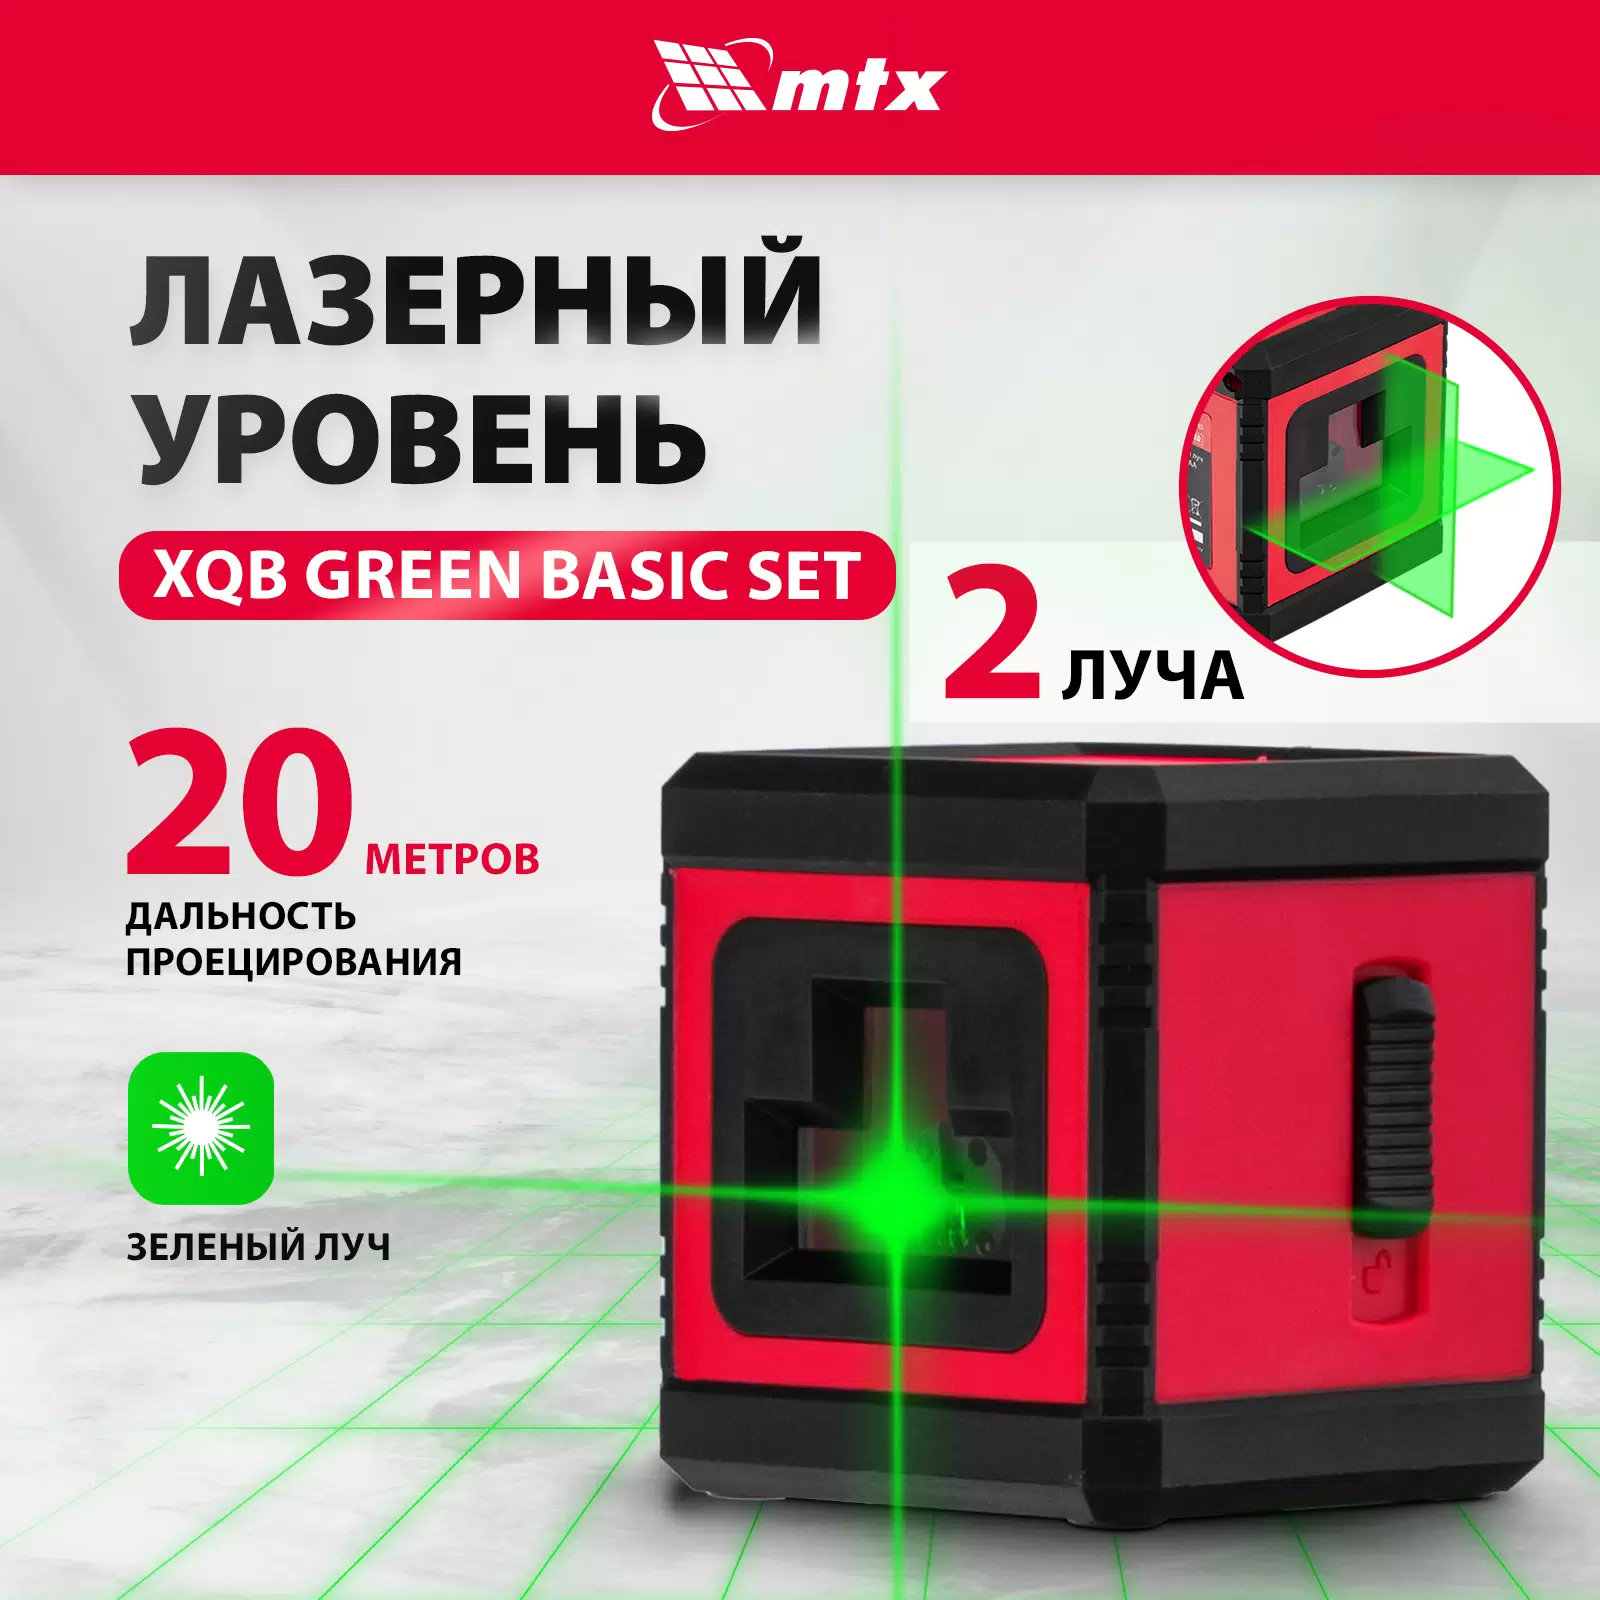 Лазерный уровень MTX XQB GREEN Basic SET, 20 м, зеленый луч, батарейки, резьба 1/4" 35019 - VLARNIKA в Донецке